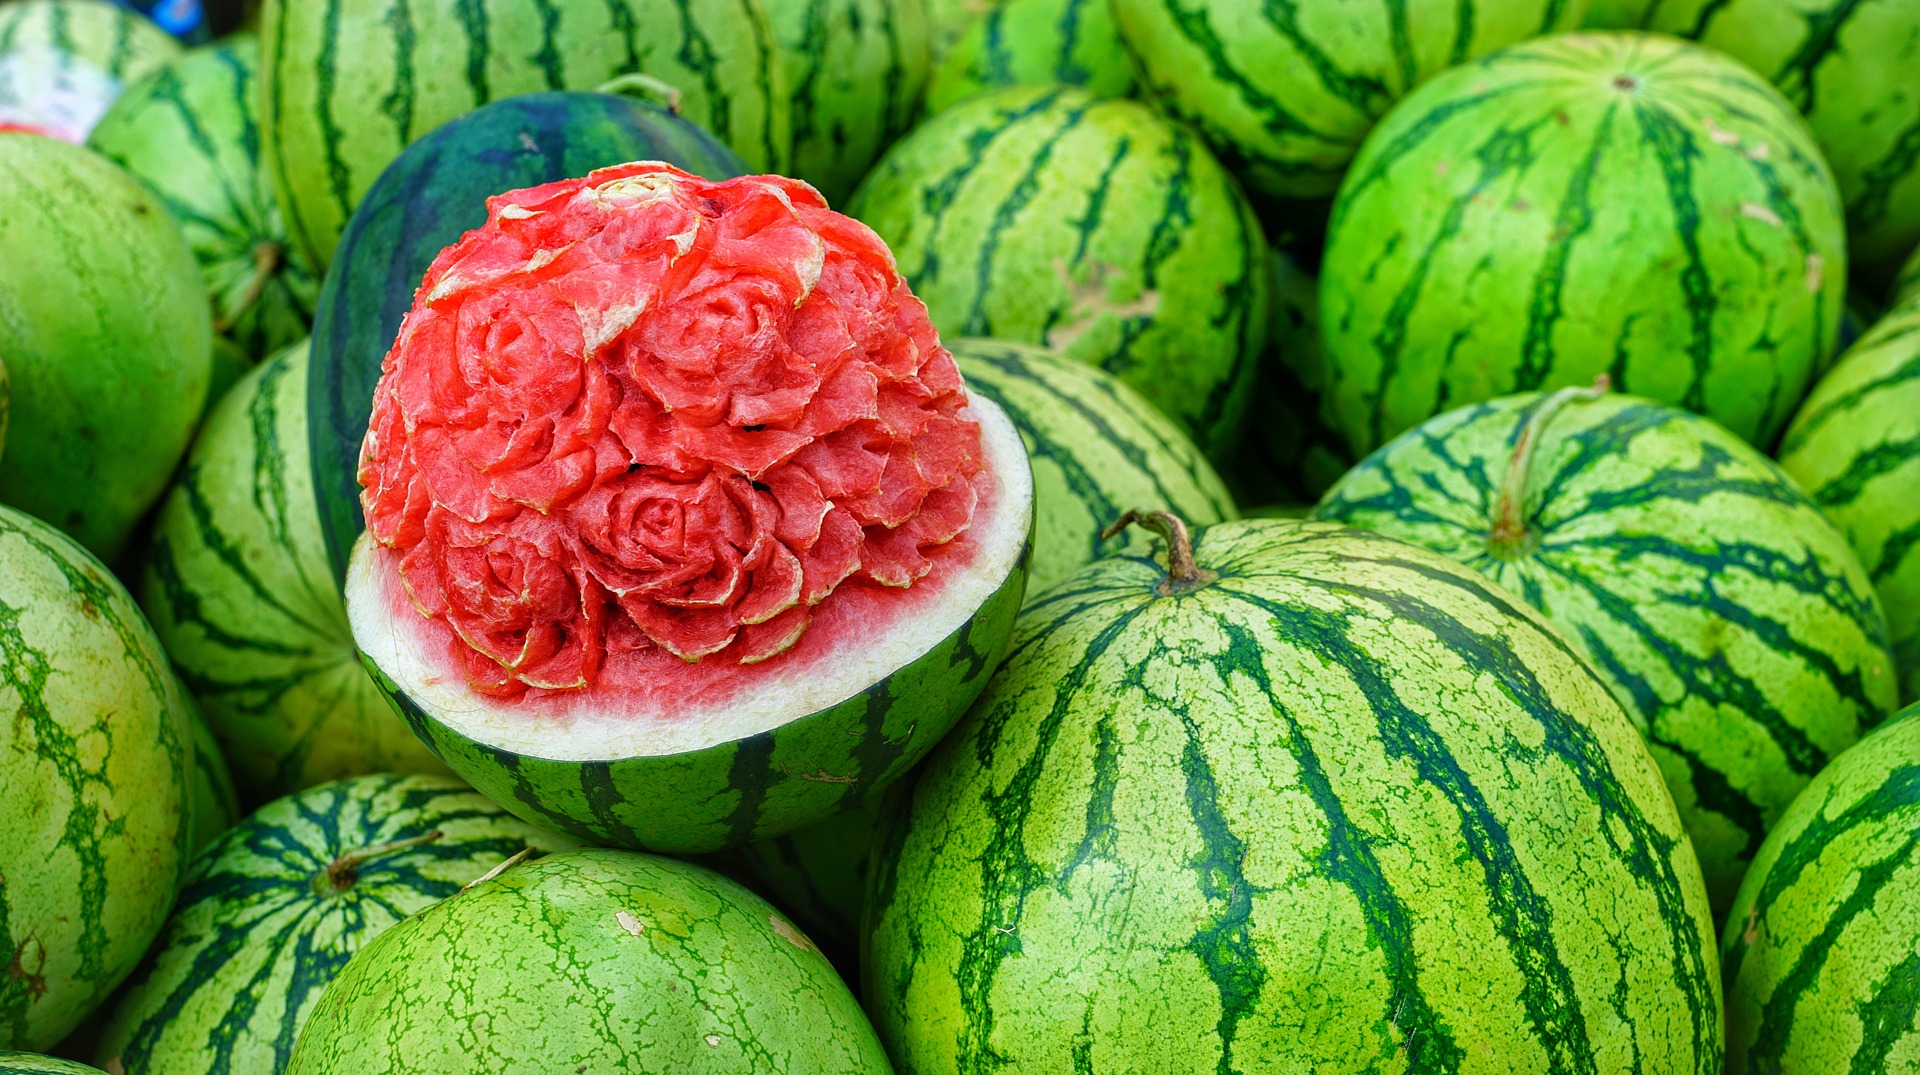 Fantasztikus lehetőségeket rejt magában – Így használd fel a görögdinnye héját!